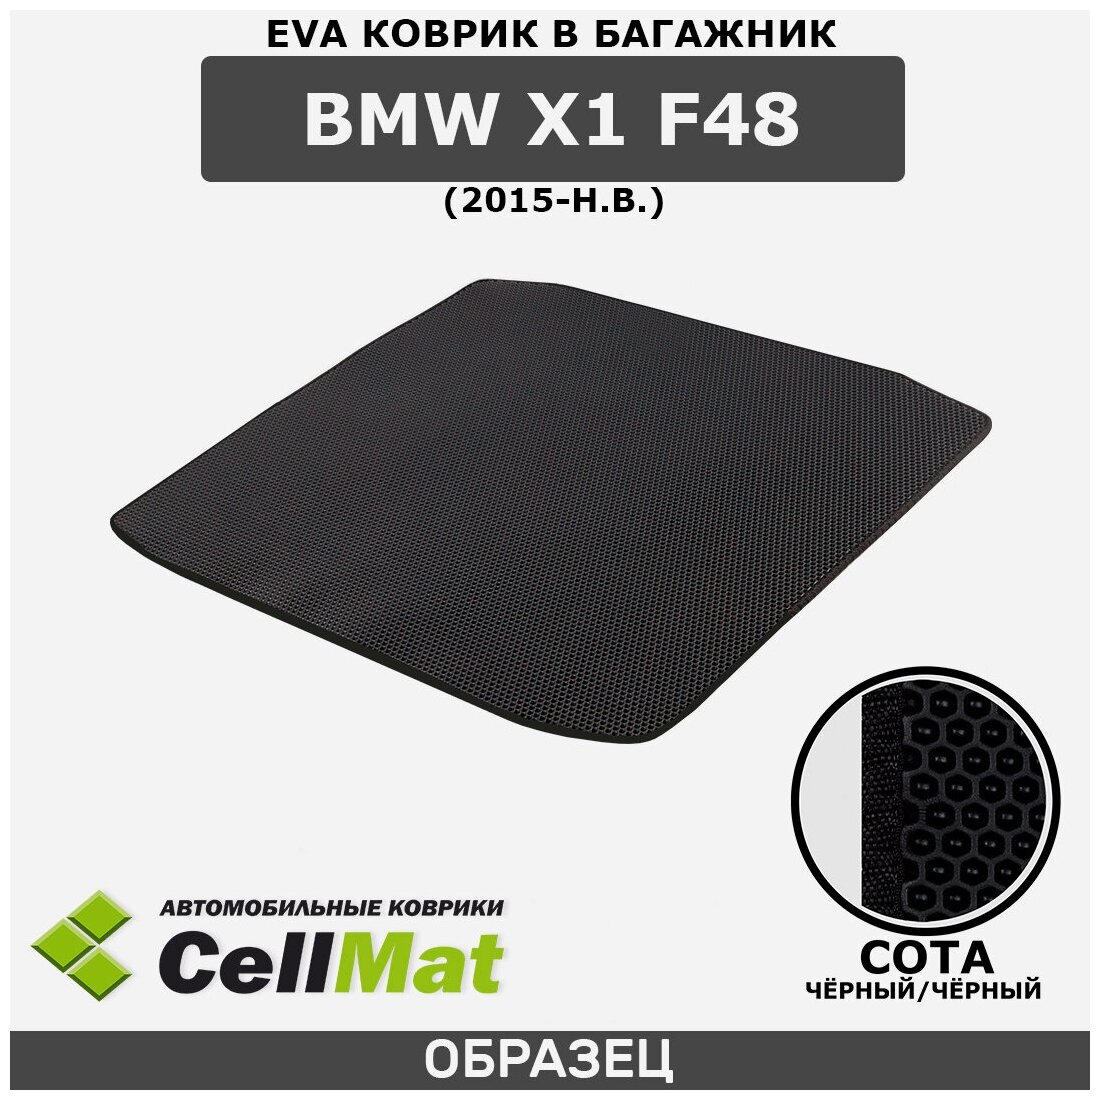 ЭВА ЕВA EVA коврик CellMat в багажник BMW X1 F48, БМВ X1 F48, 2015-н. в.